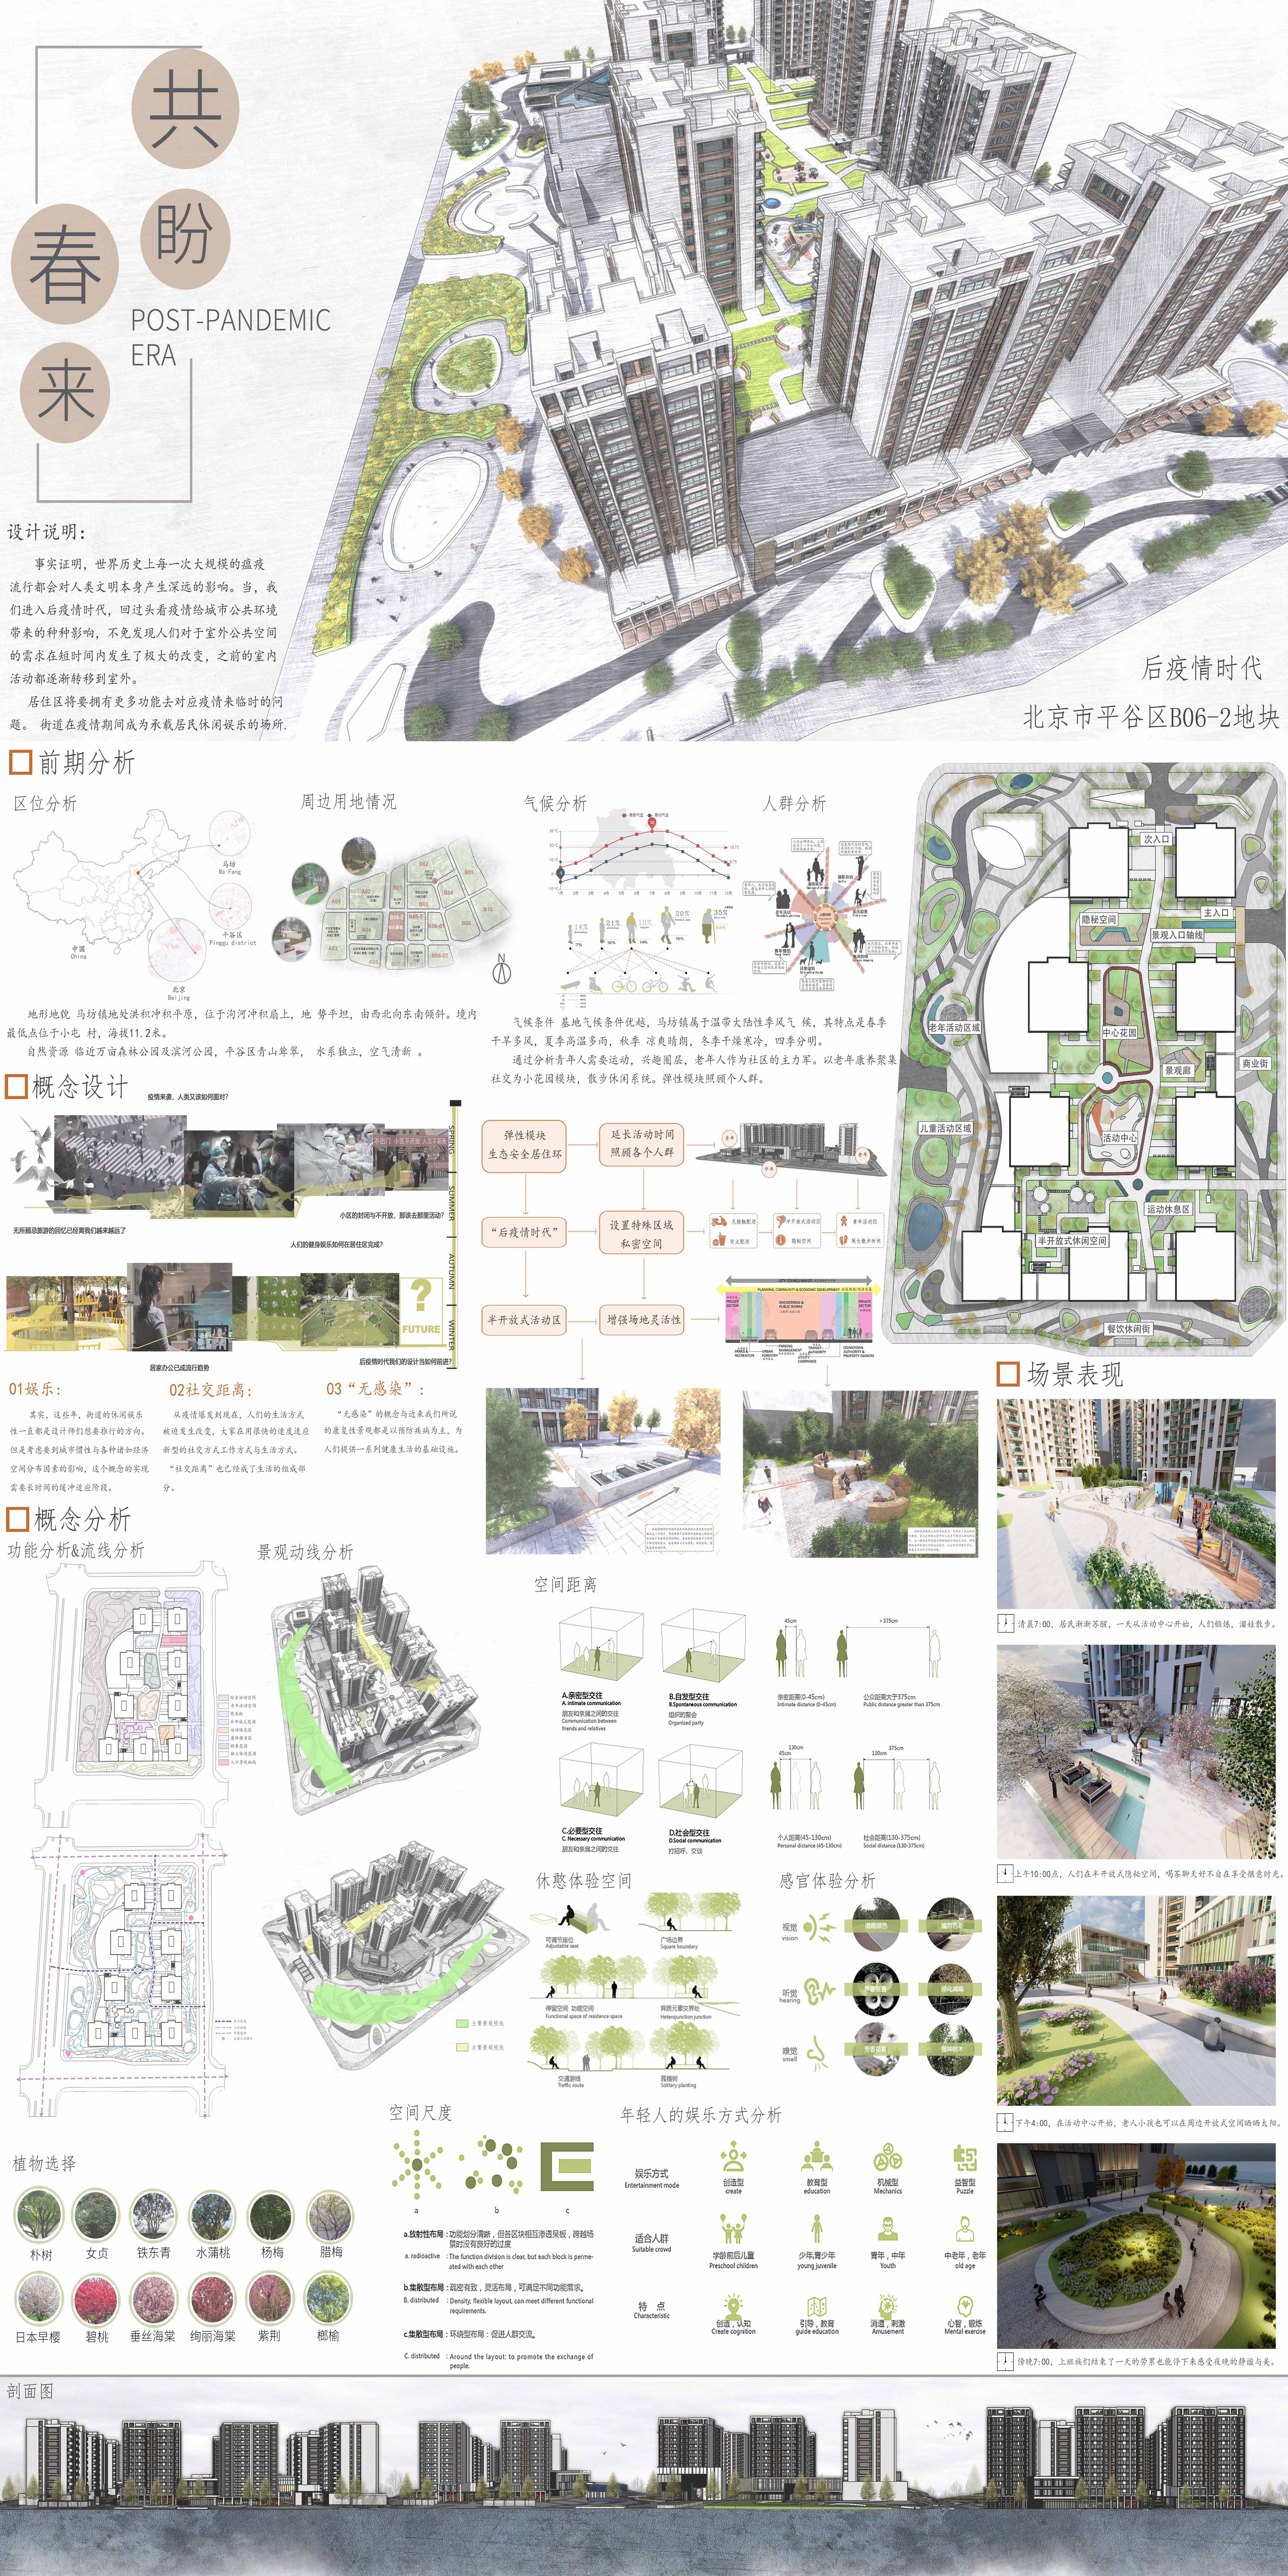 《北京市平谷区B06-2地块景观设计》-邱豪